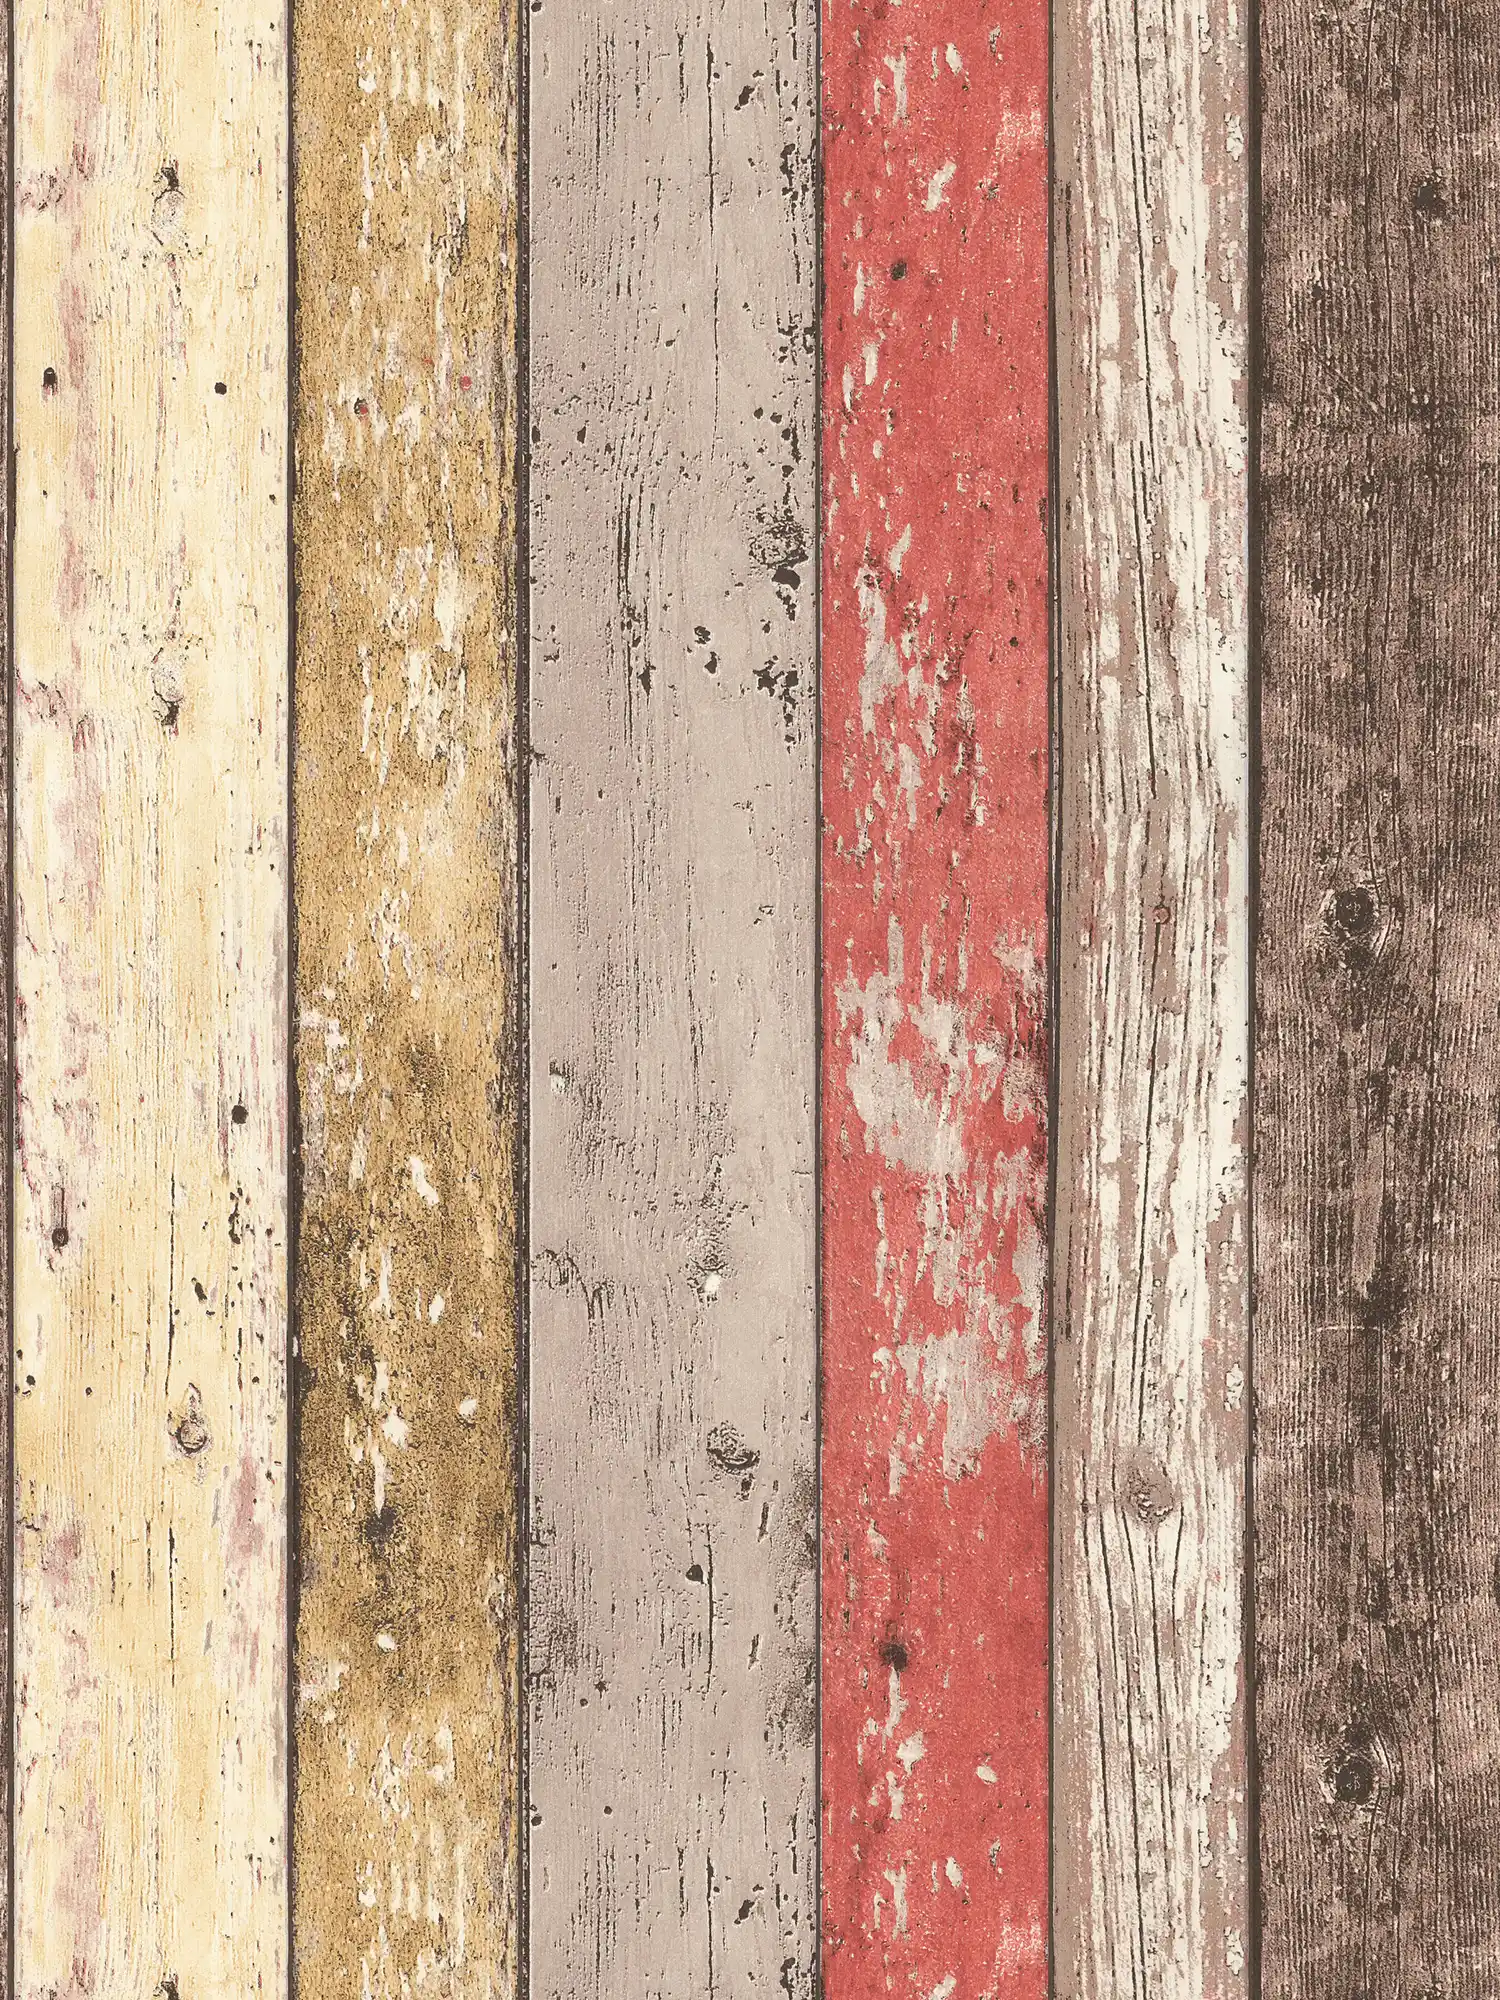 Carta da parati in legno con aspetto usato per lo stile vintage e country - marrone, rosso, beige
